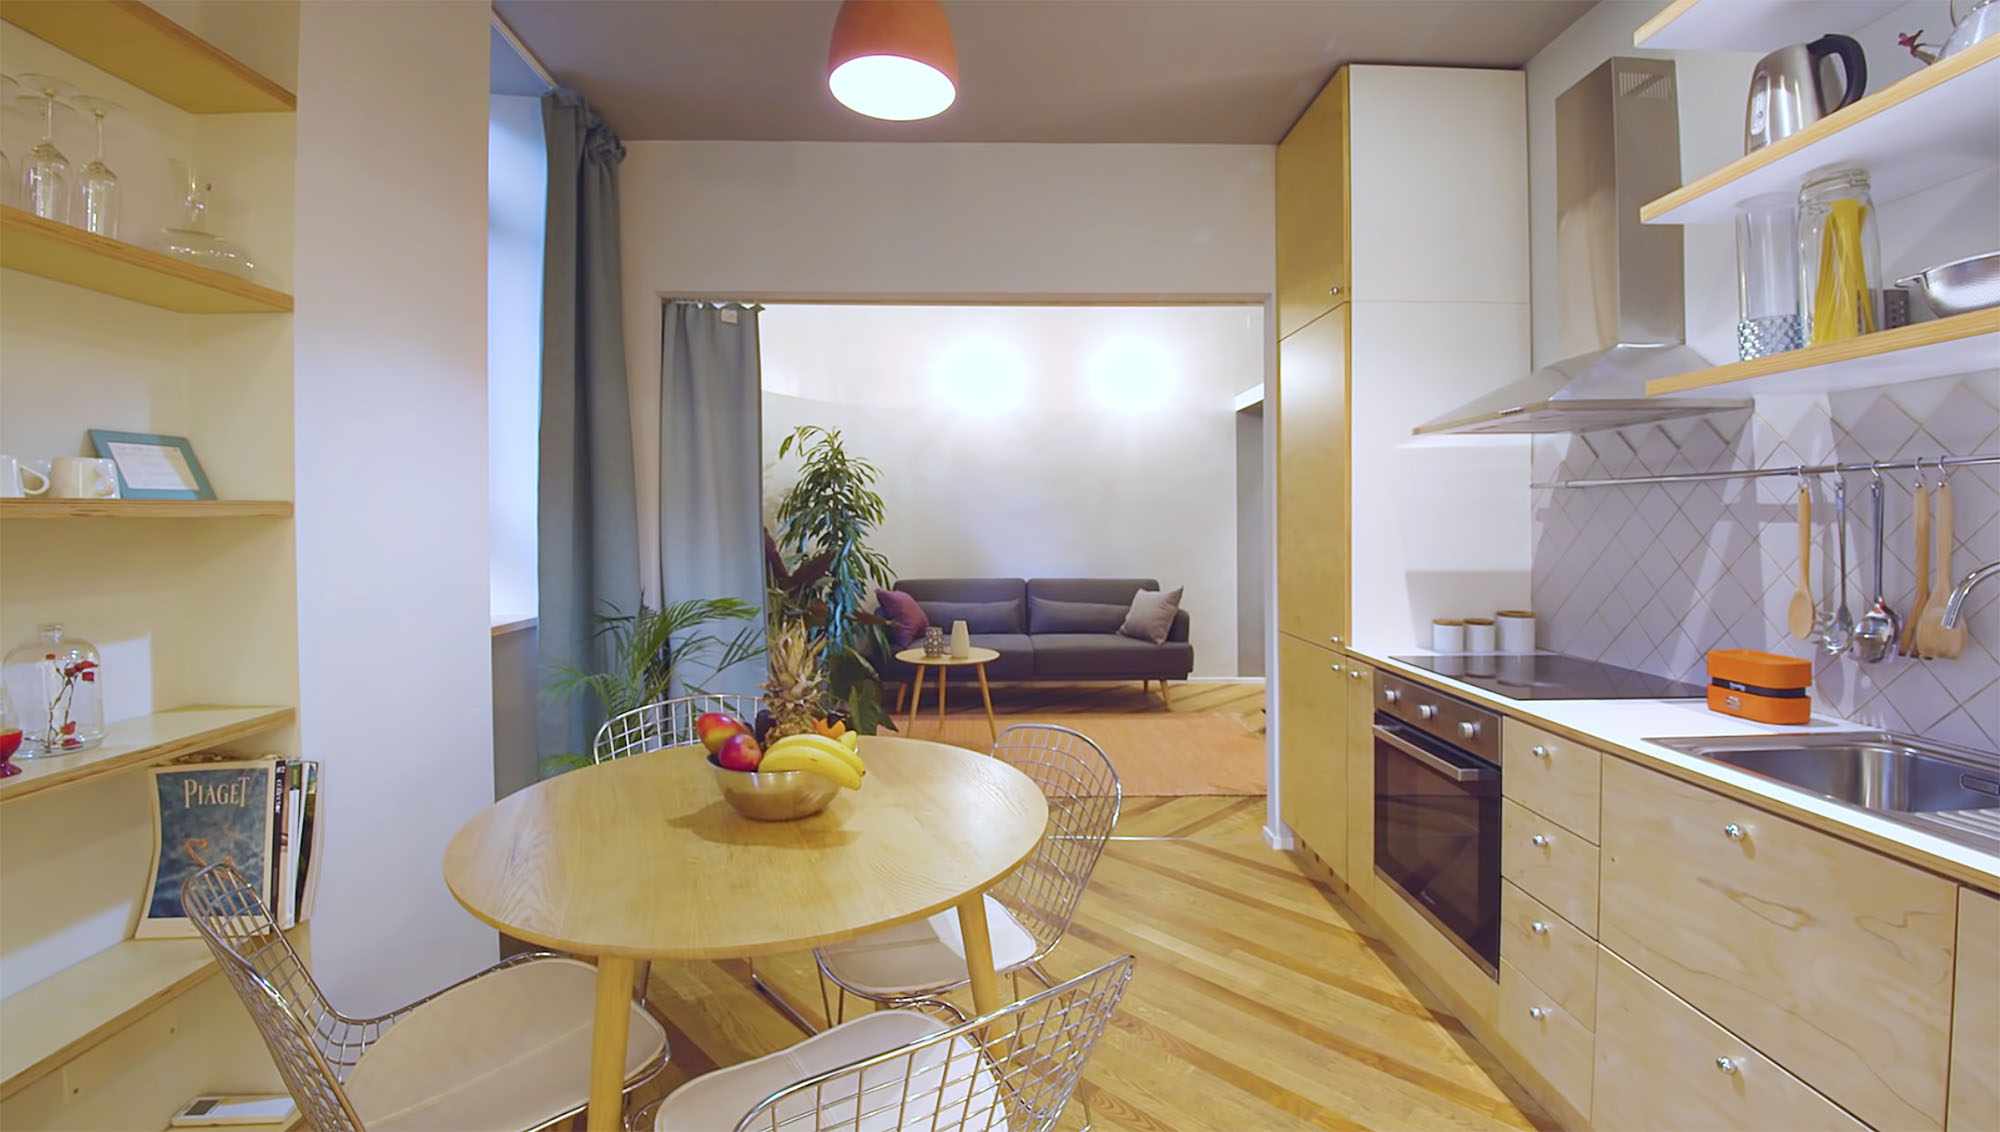 住宅在不断过渡小公寓改造ATOMAA厨房